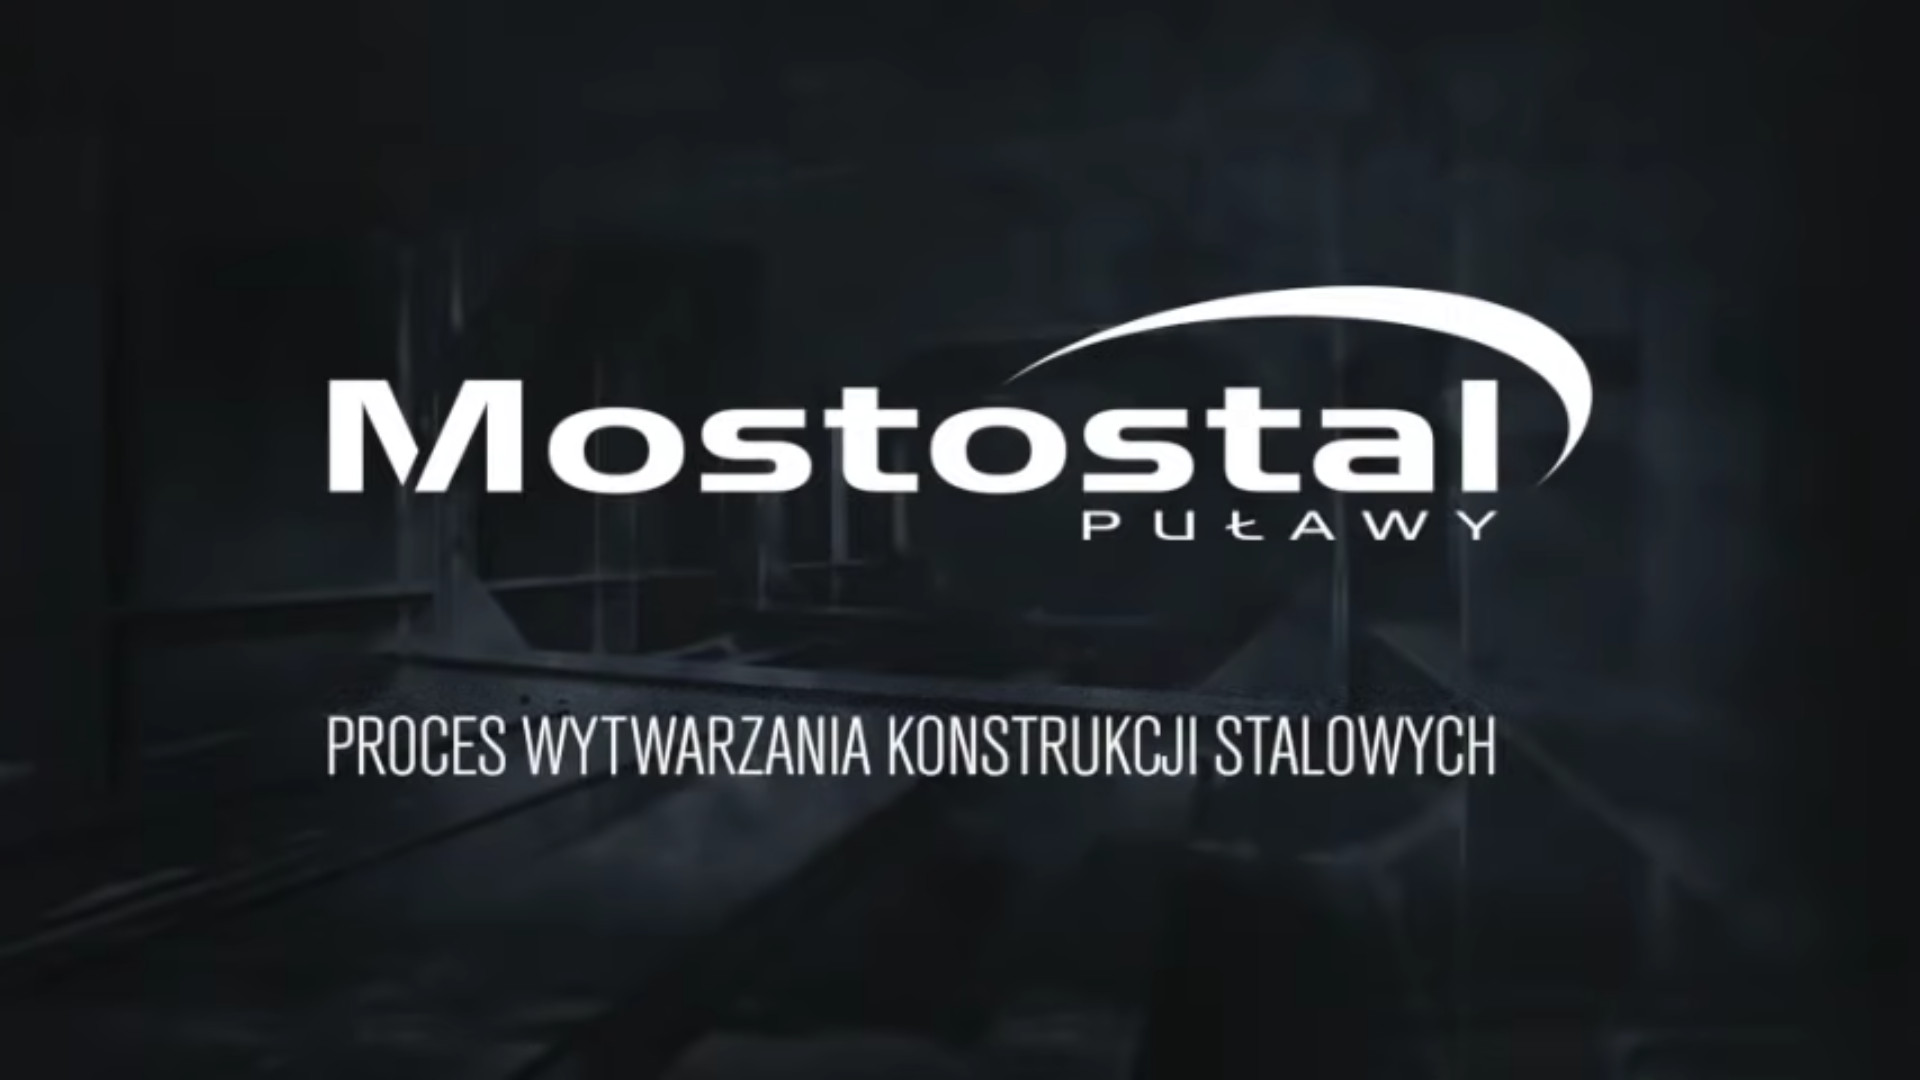 Mostostal Puławy S.A - Herstellungsbetrieb für Stahlkonstruktionen